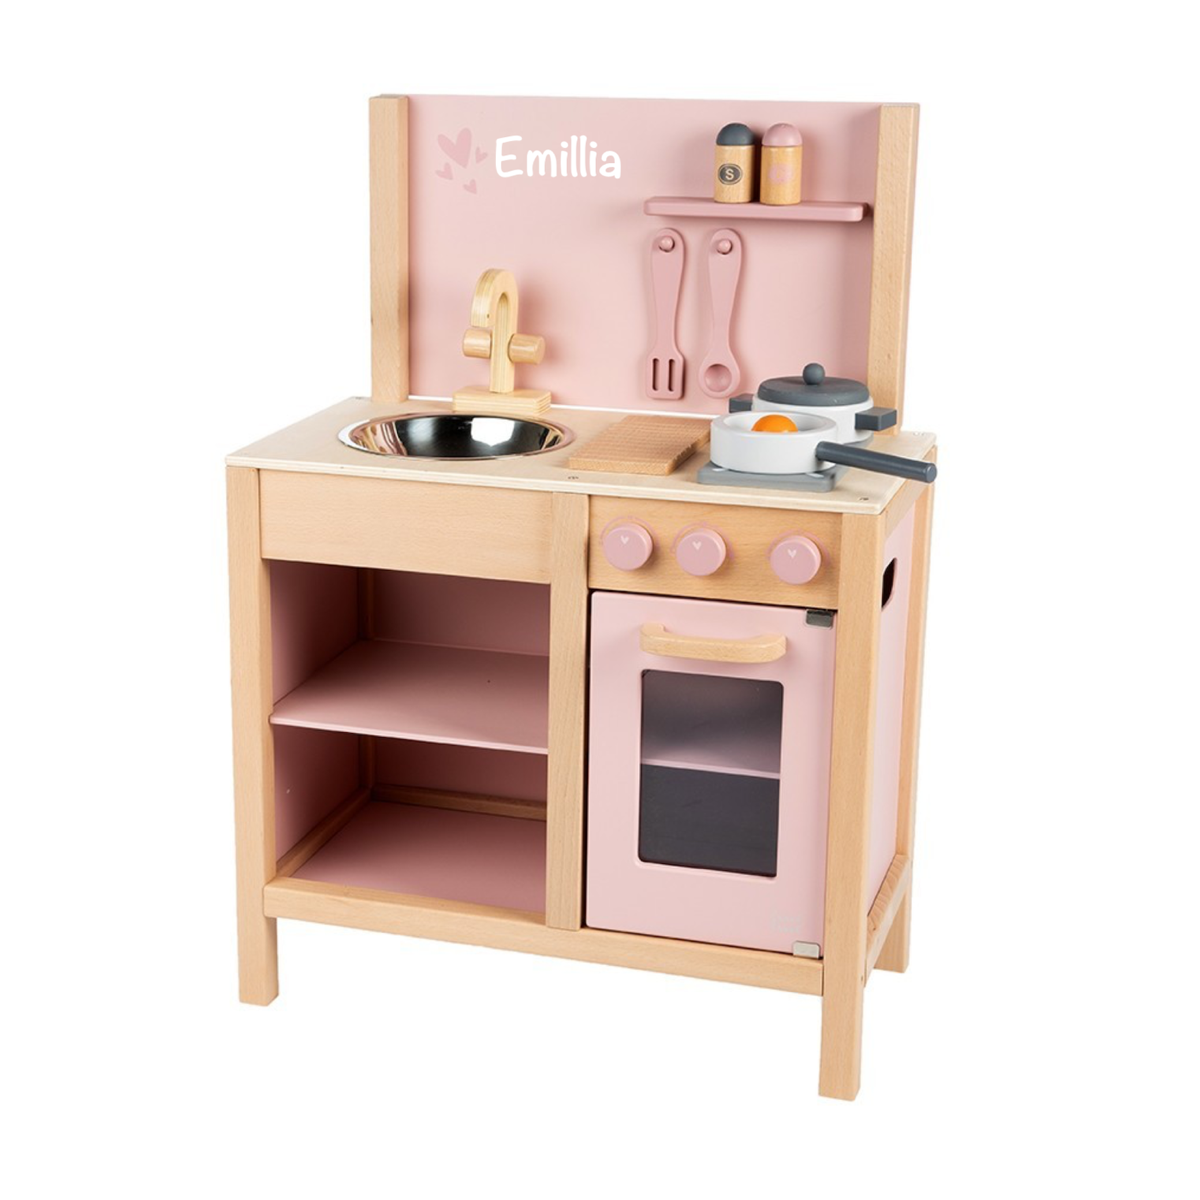 Kinderküche Rosalie kompakt aus Holz Spielzeug Küche Spielküche rosa für Kinder 